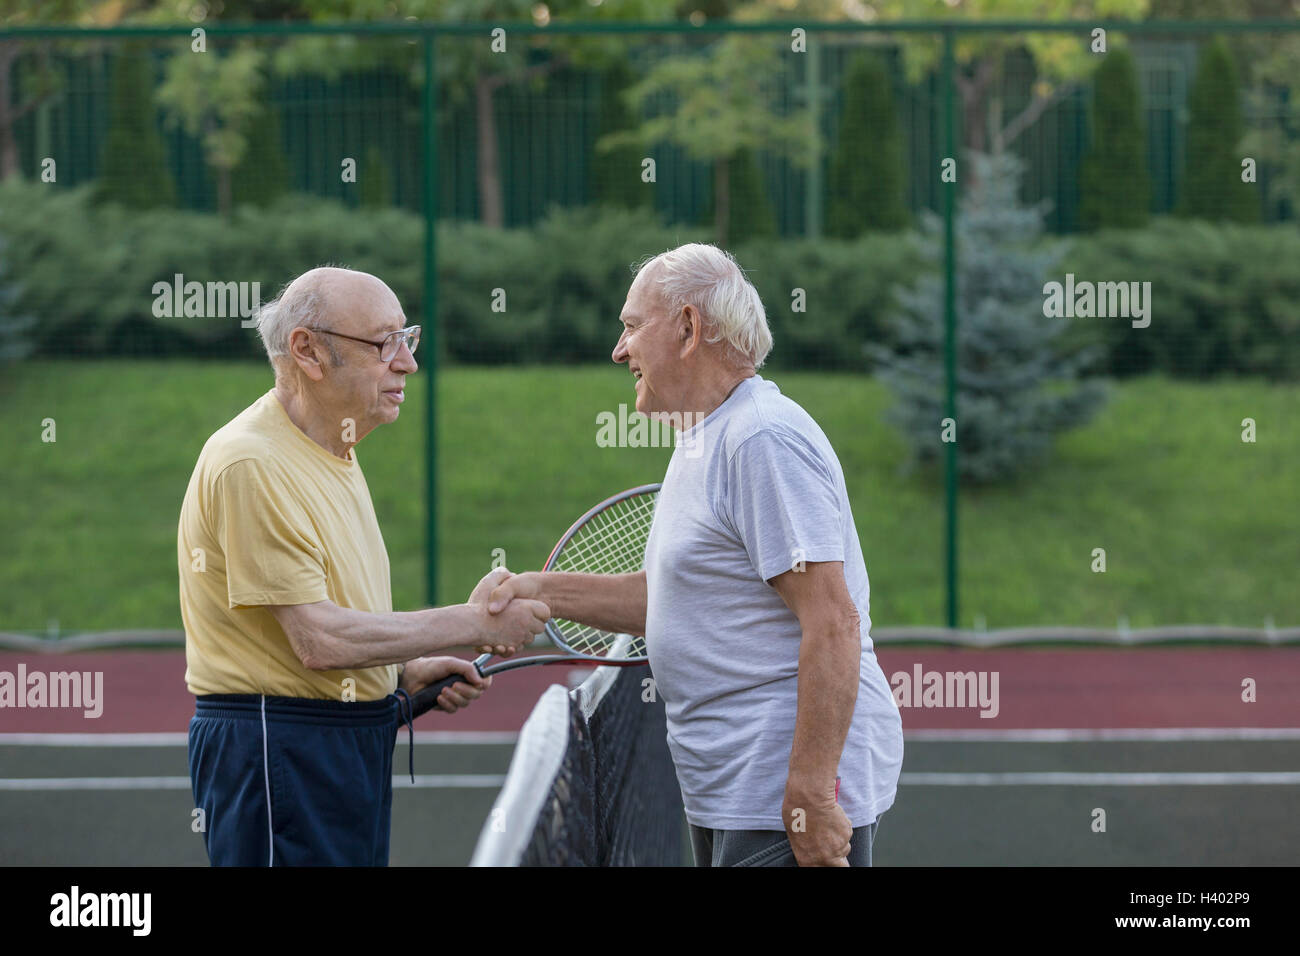 Senior friends shaking hands plus net à court de tennis Banque D'Images